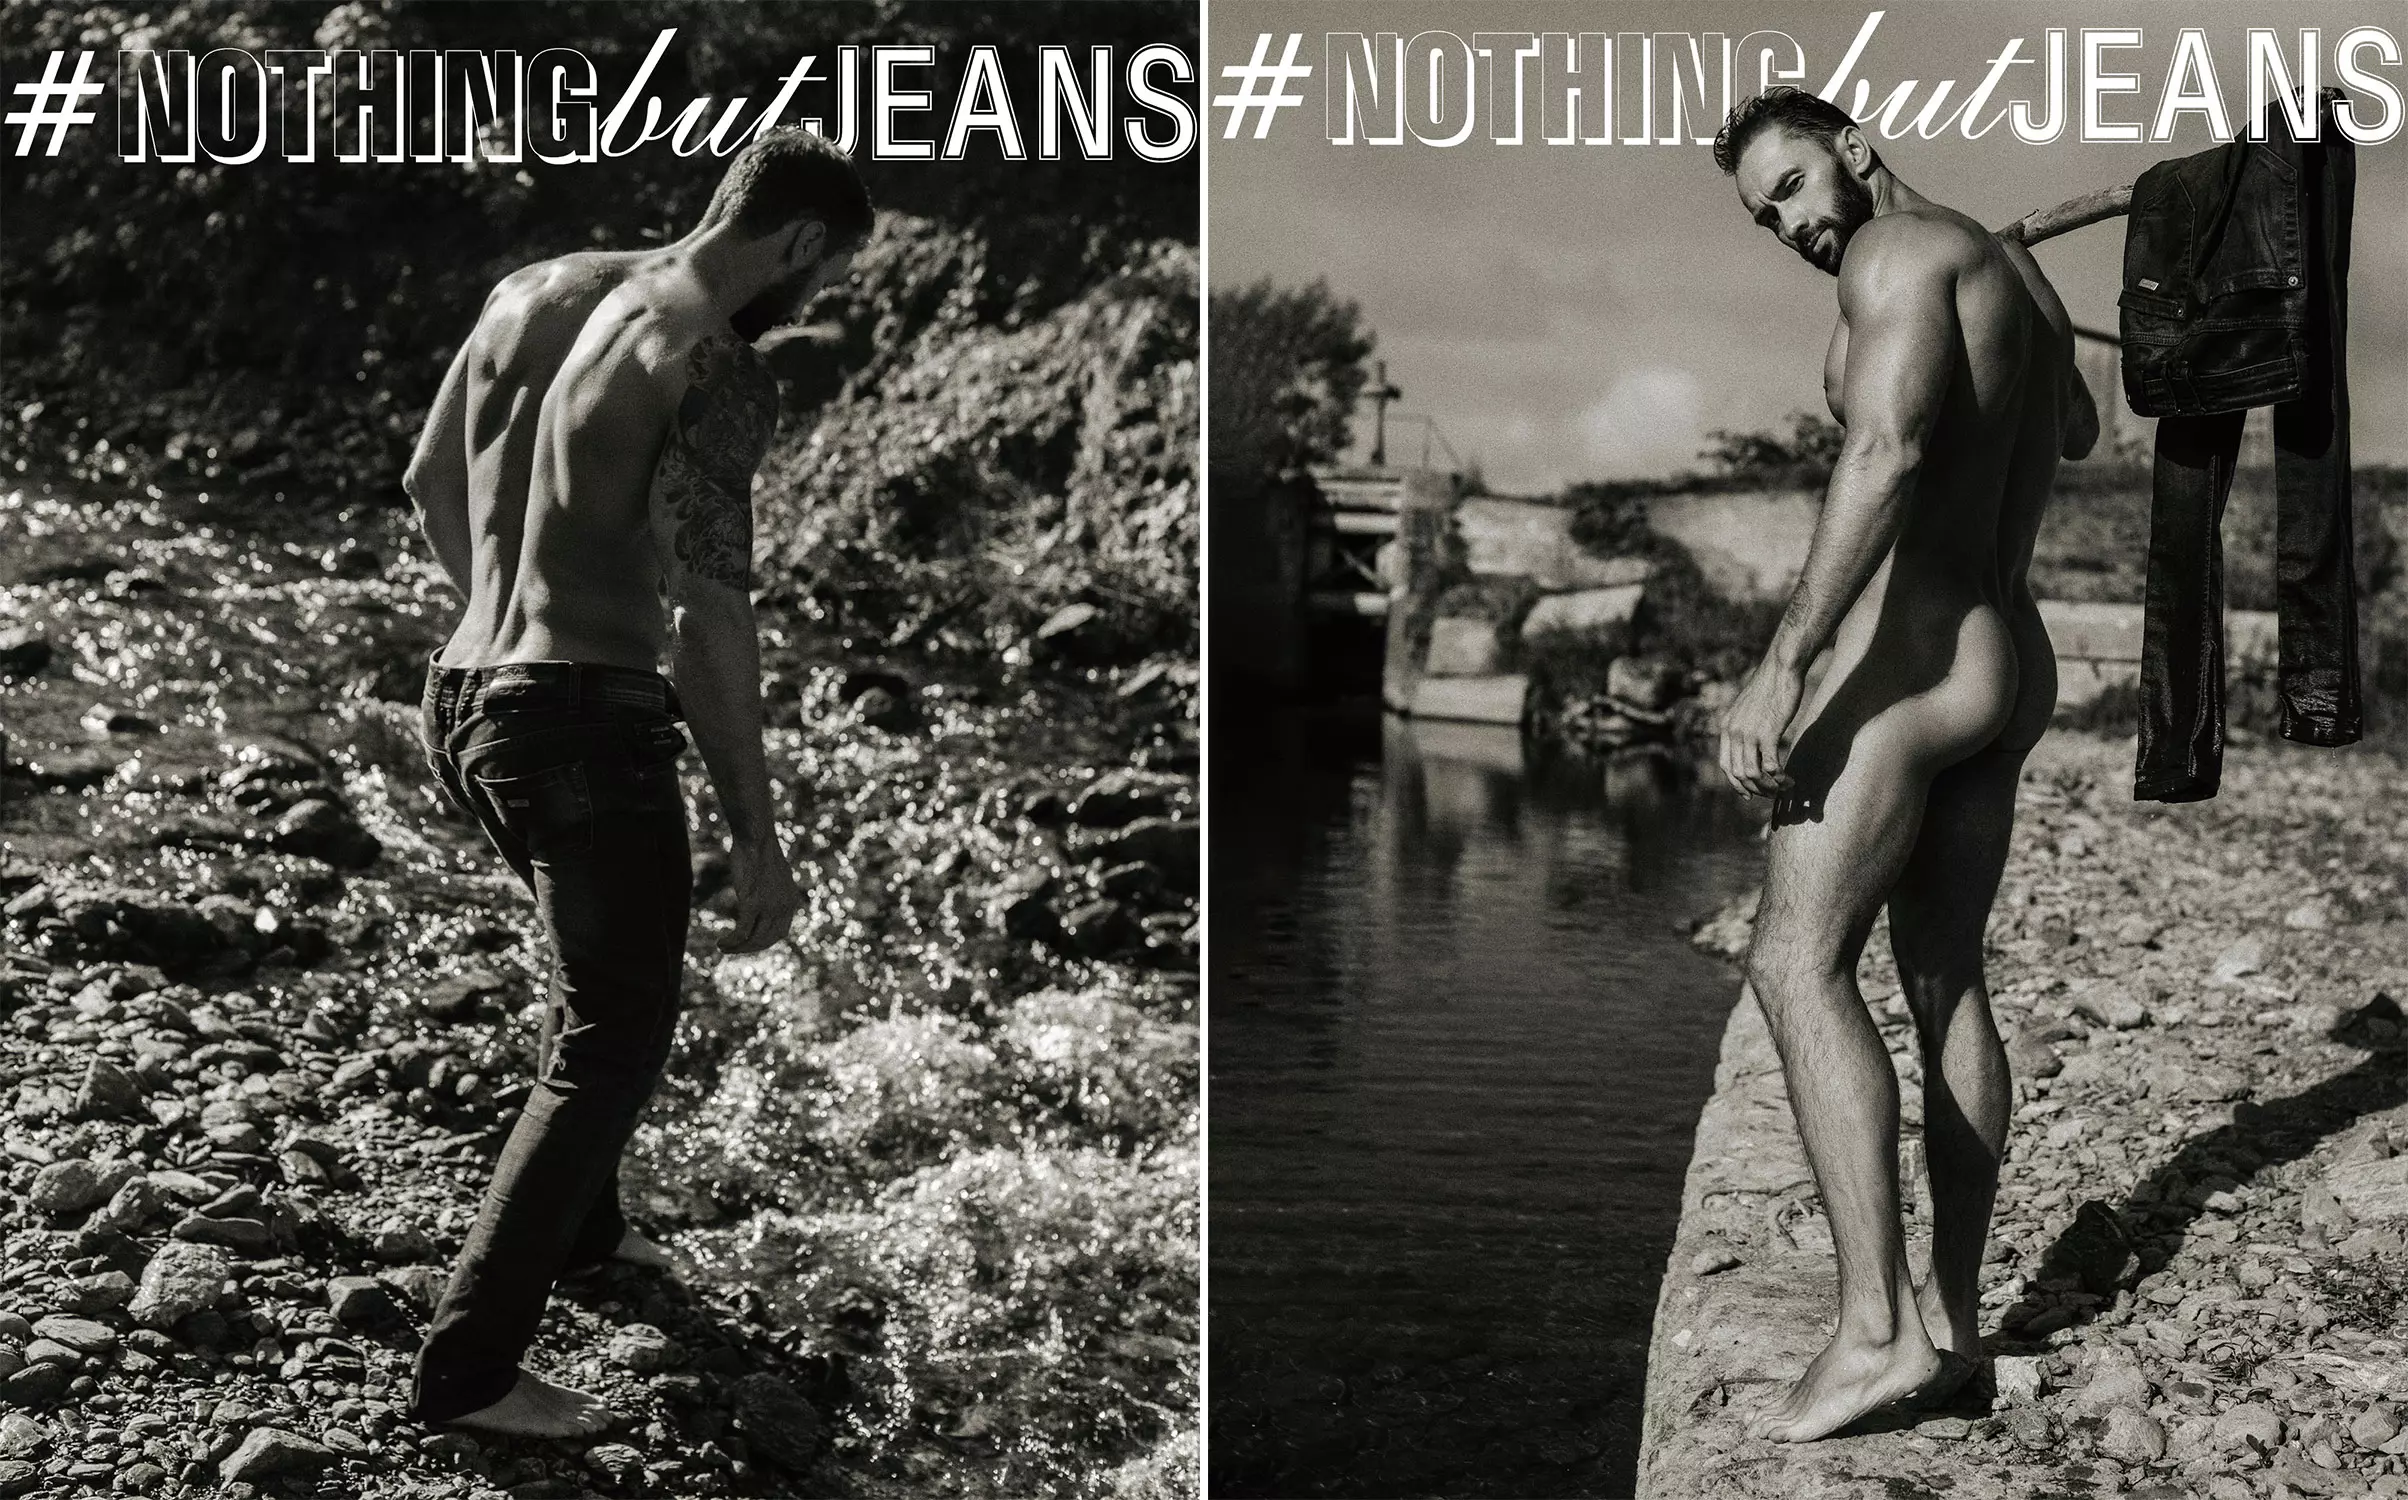 ሚካሂል ፎሚን በ #NothingButJeans በሰርጌ ሊ ነው።